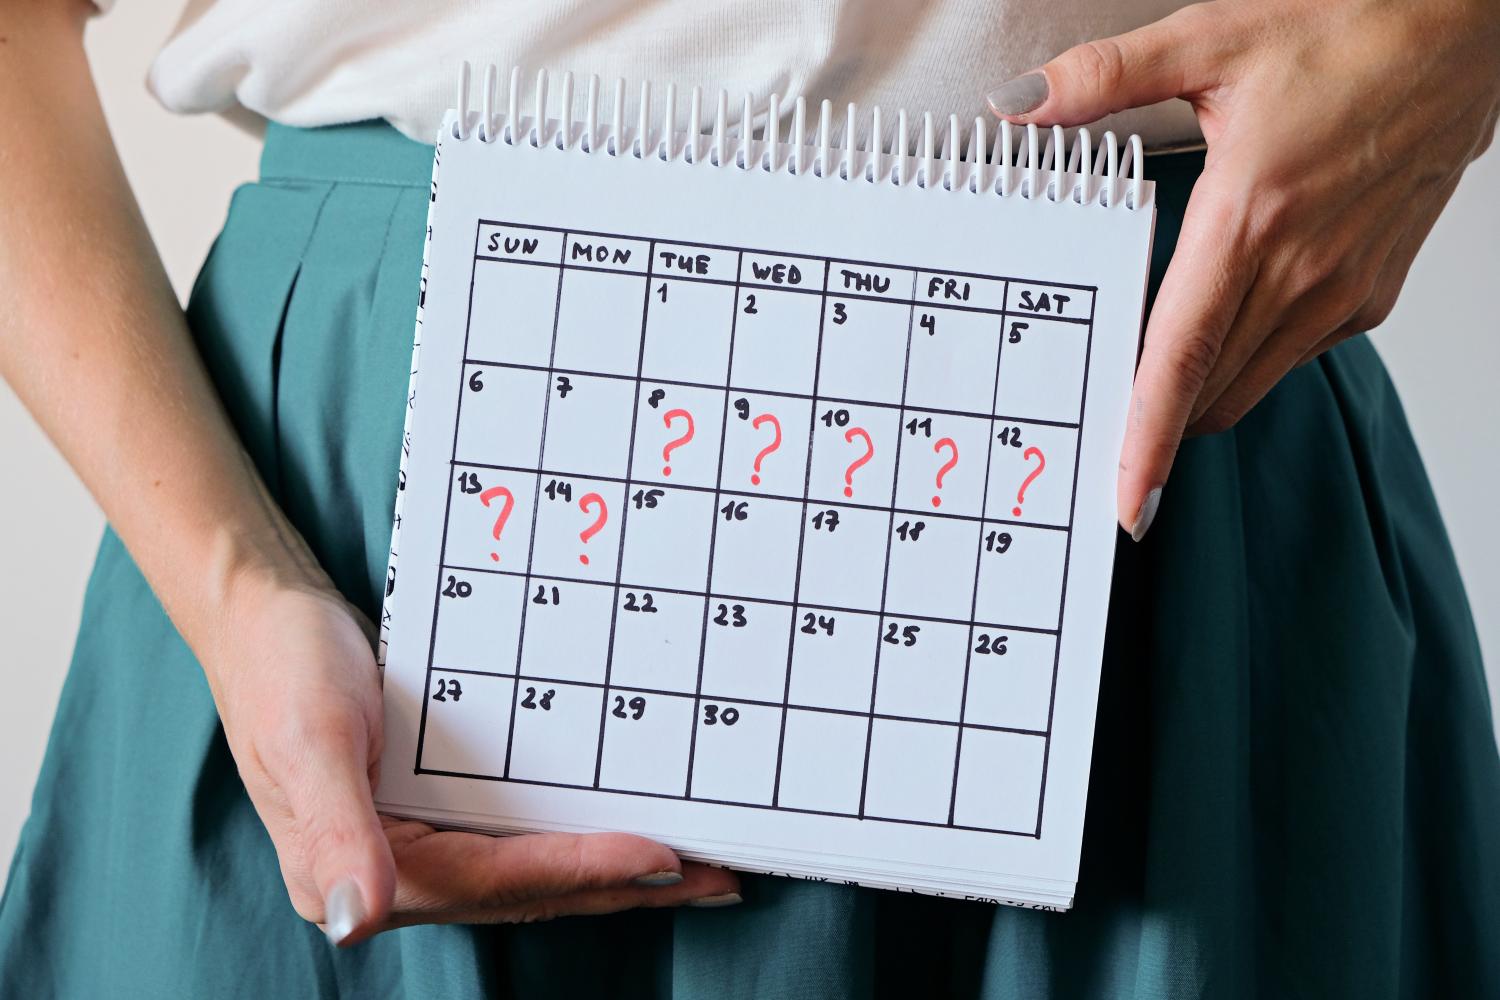 Menstruar duas vezes no mês pode indicar gravidez?